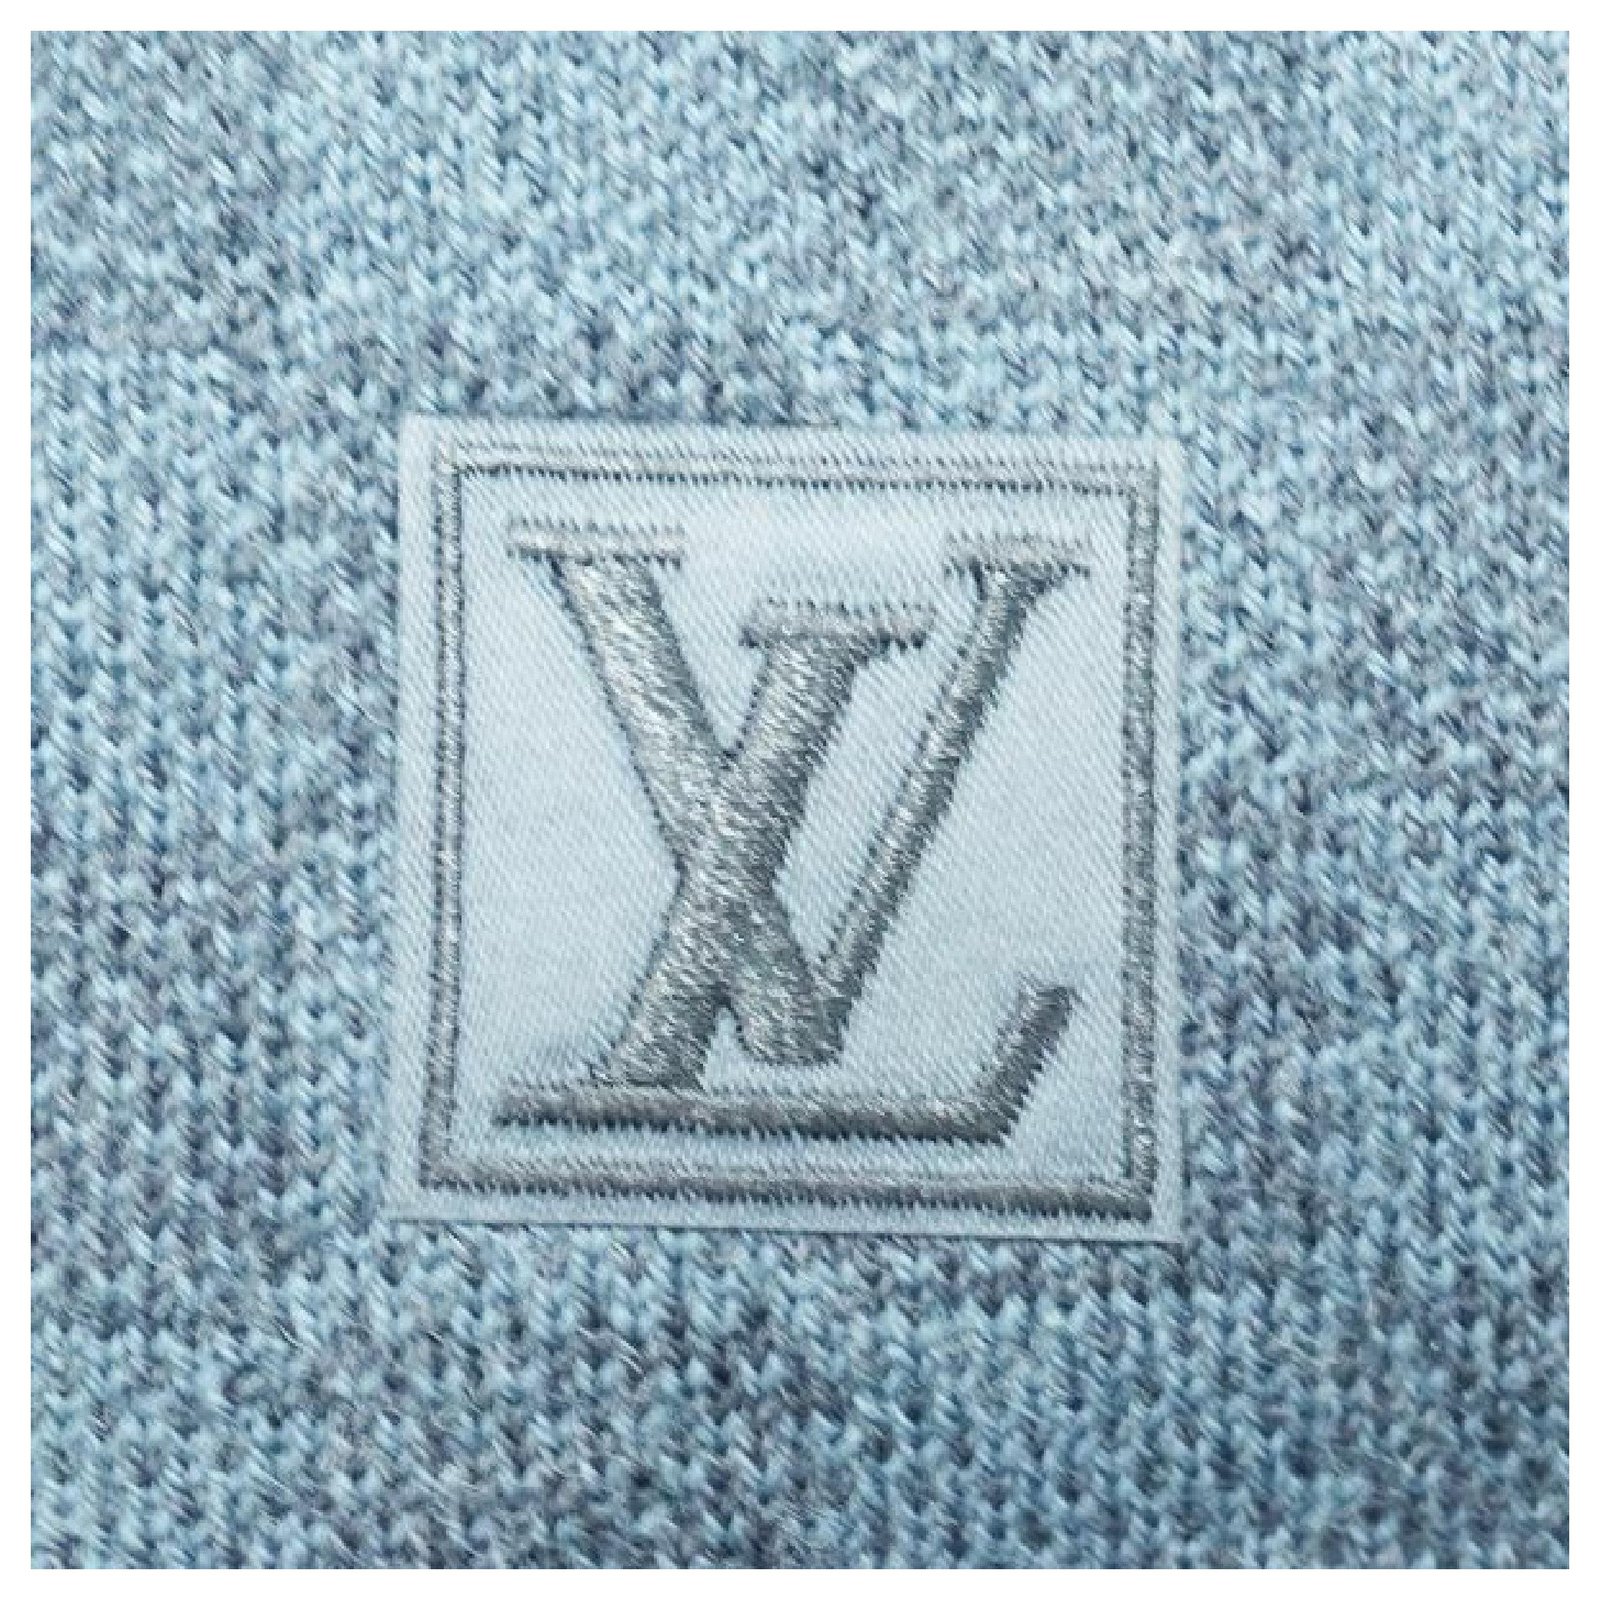 LOUIS VUITTON M70030 Damier Cobalt charpes petit damier Scarf wool Gray  Based